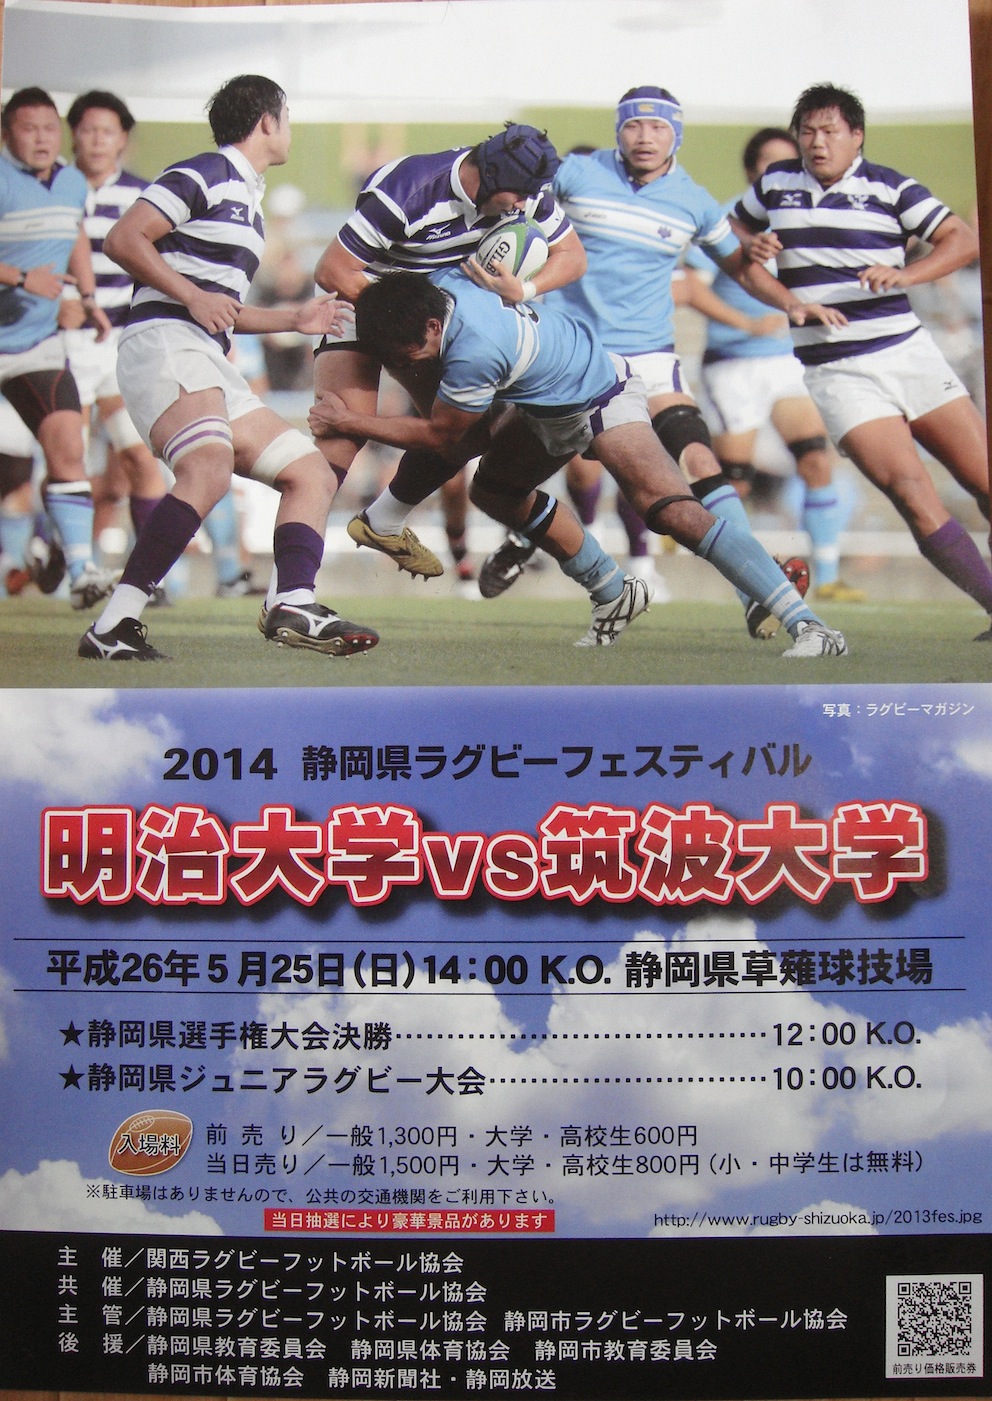 静岡県ラグビーフェスティバル2014